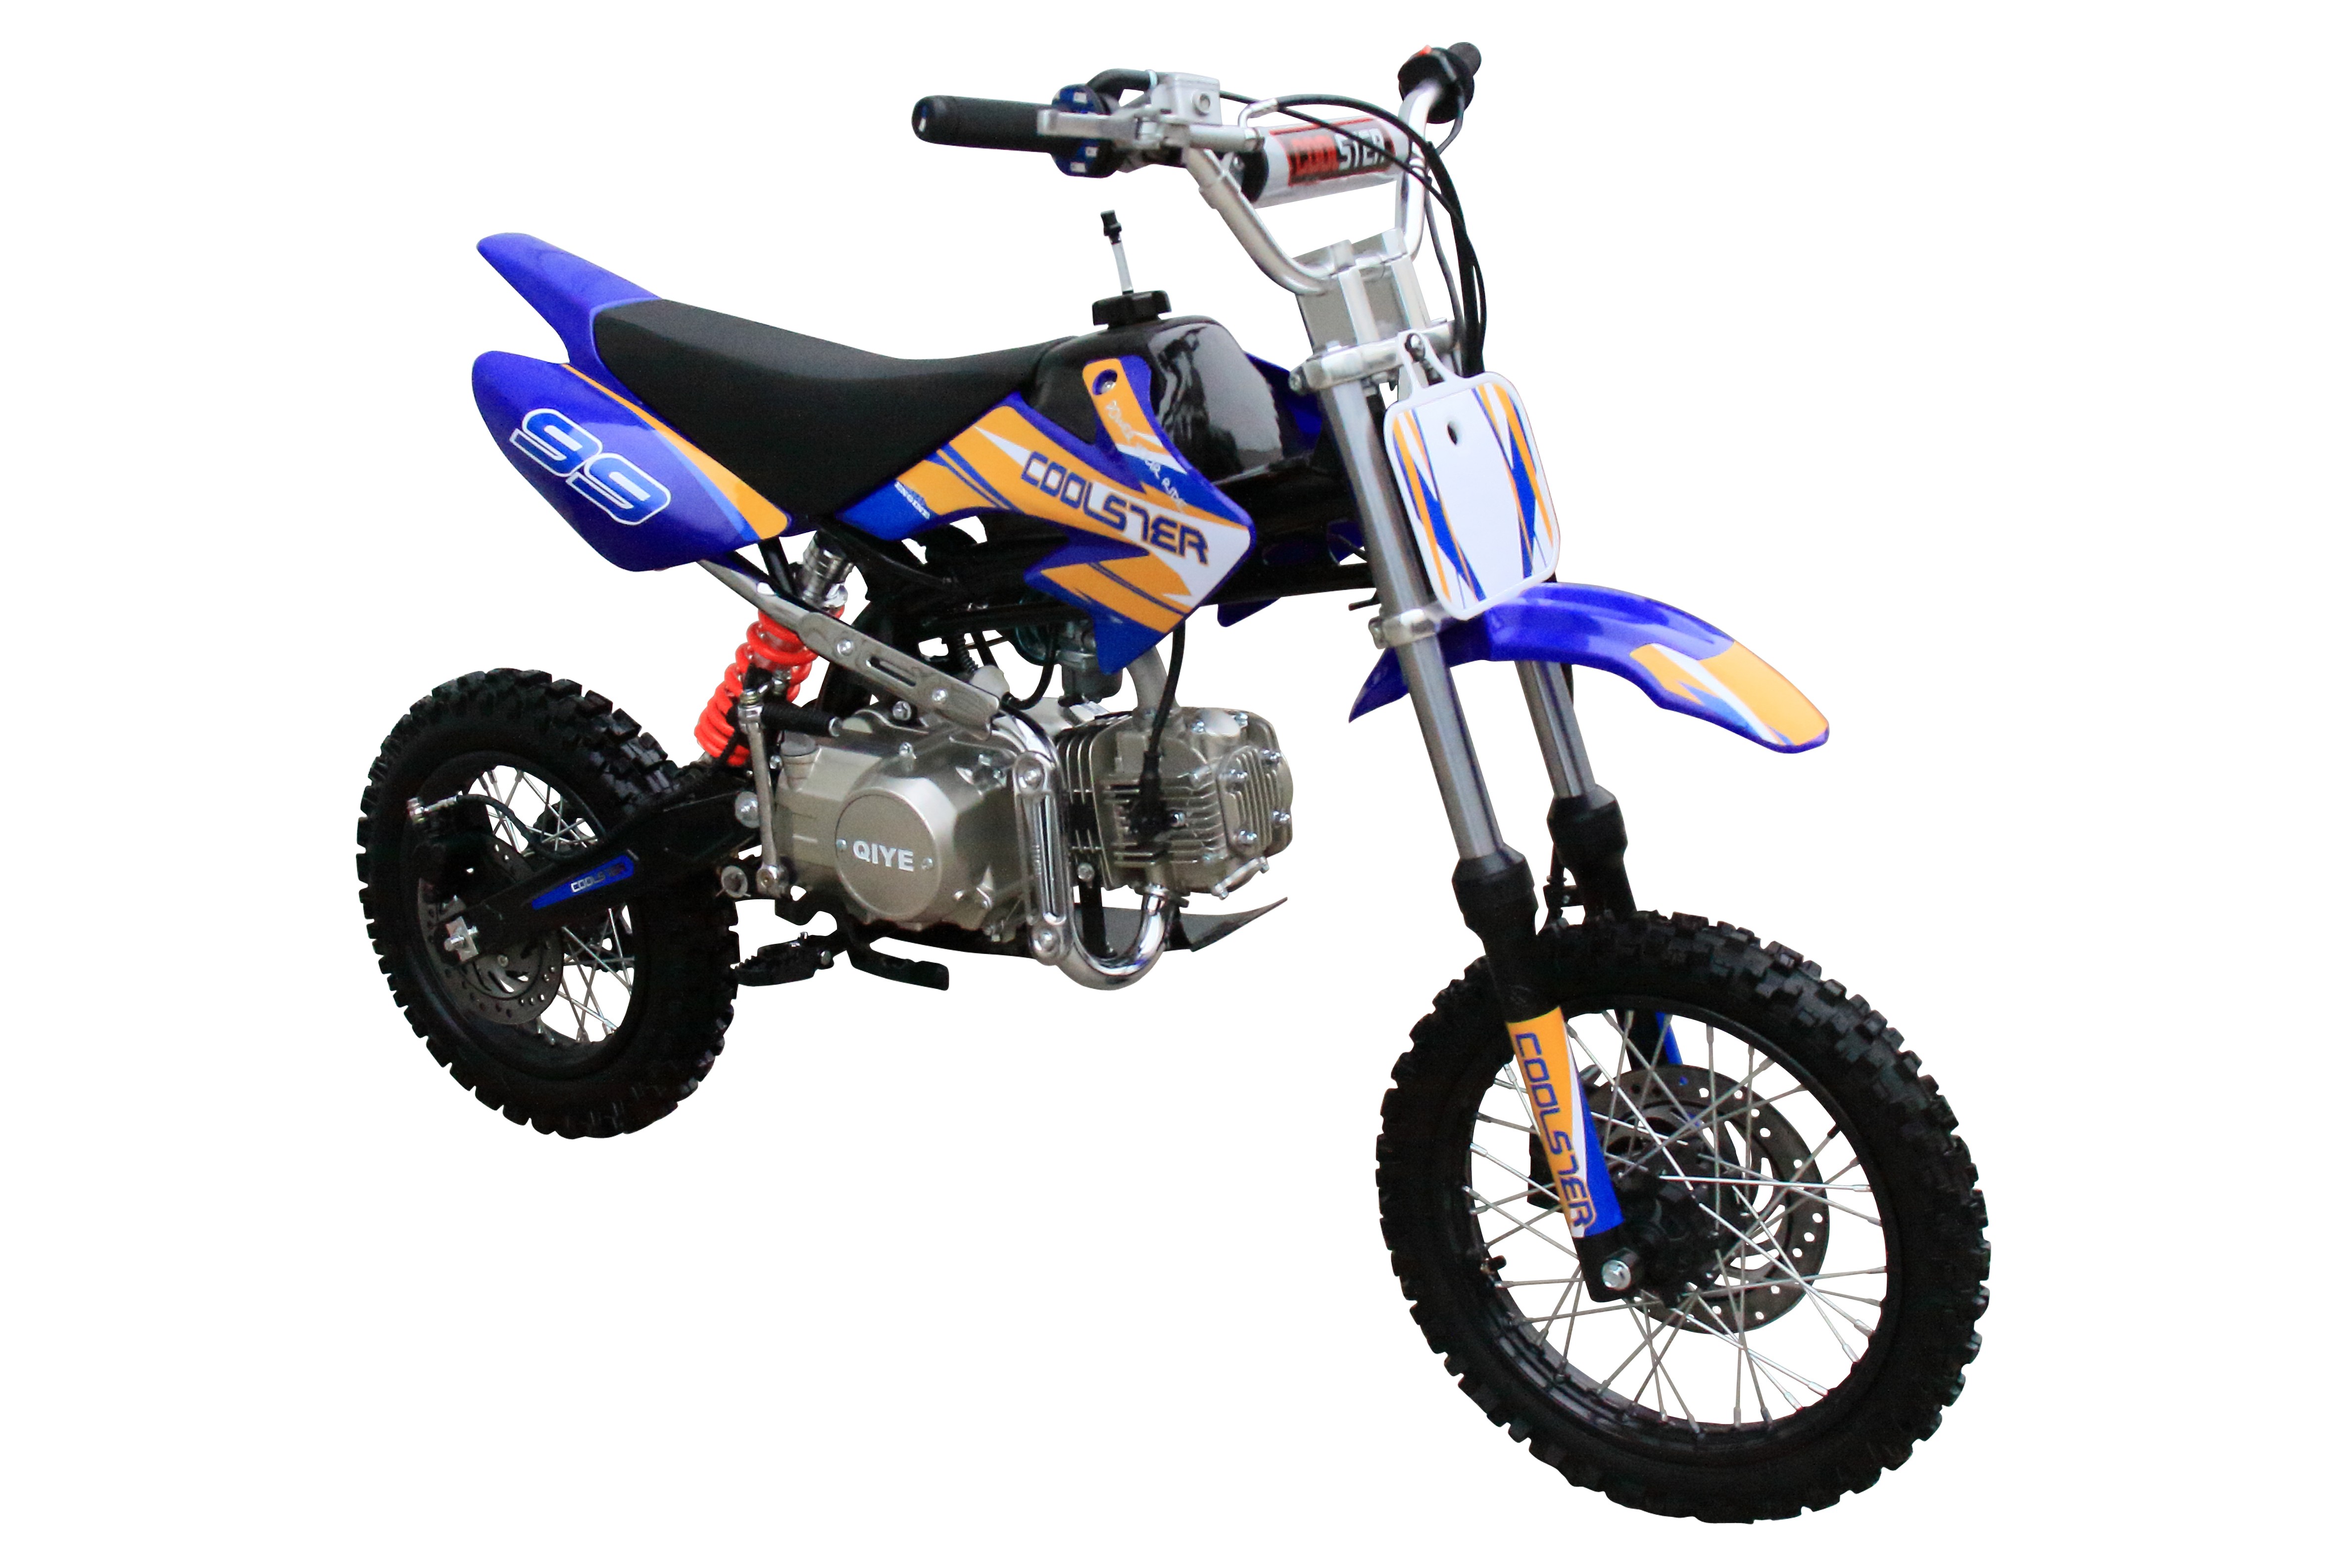 Sluit een verzekering af Bezwaar zwaard Coolster 125cc XR125 Semi-auto Pit Dirt Bike